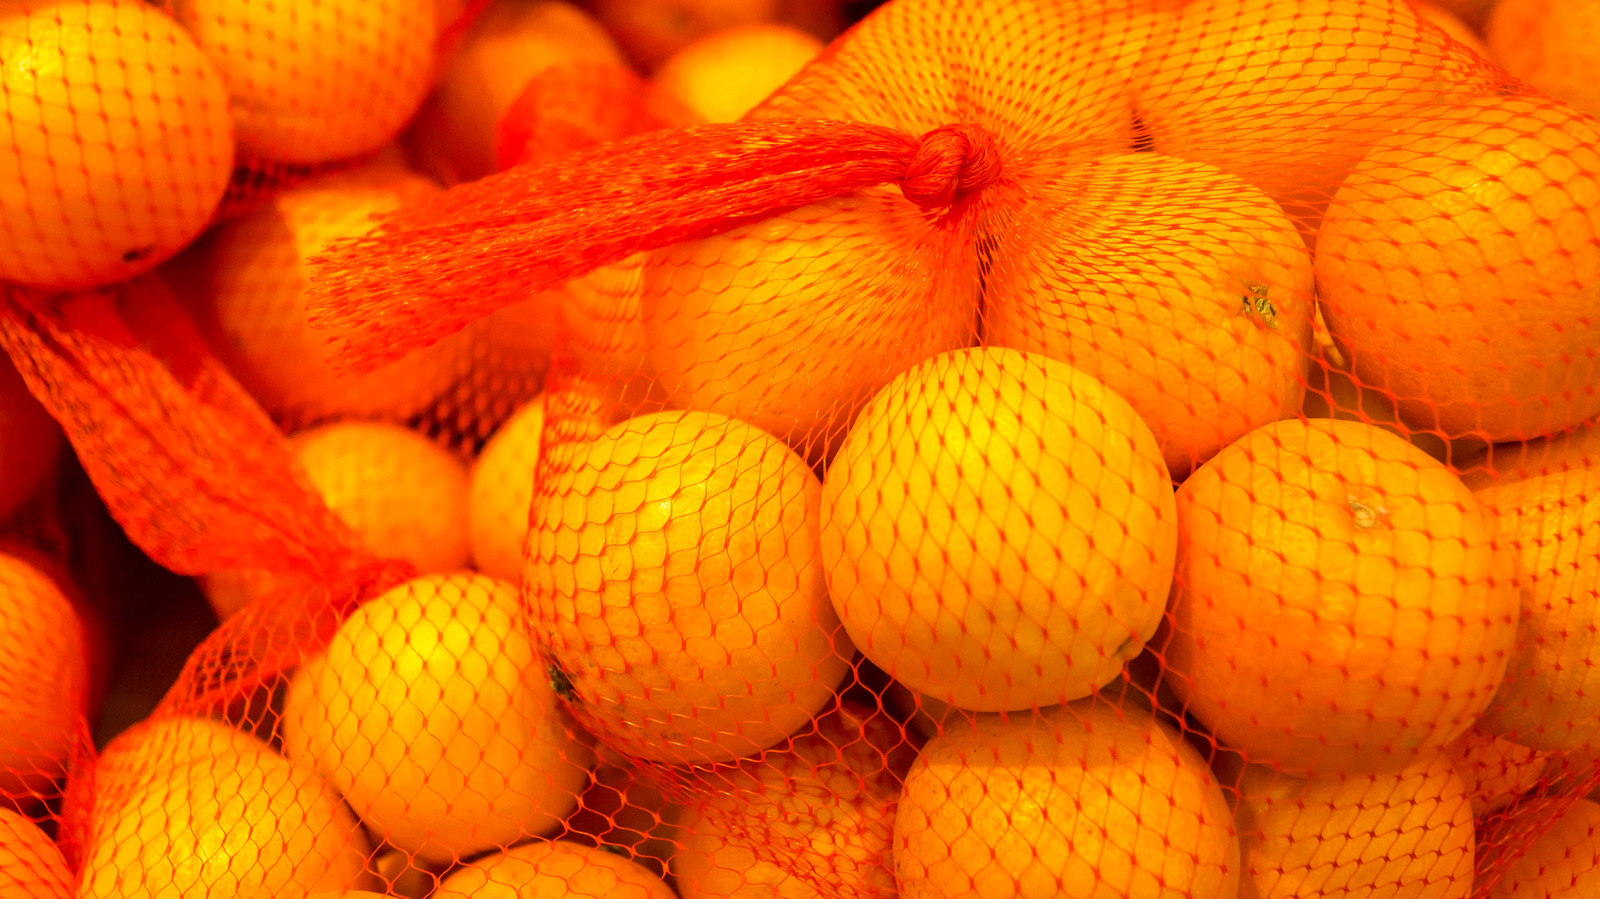 90441 Oranges Net Images Stock Photos  Vectors  Shutterstock